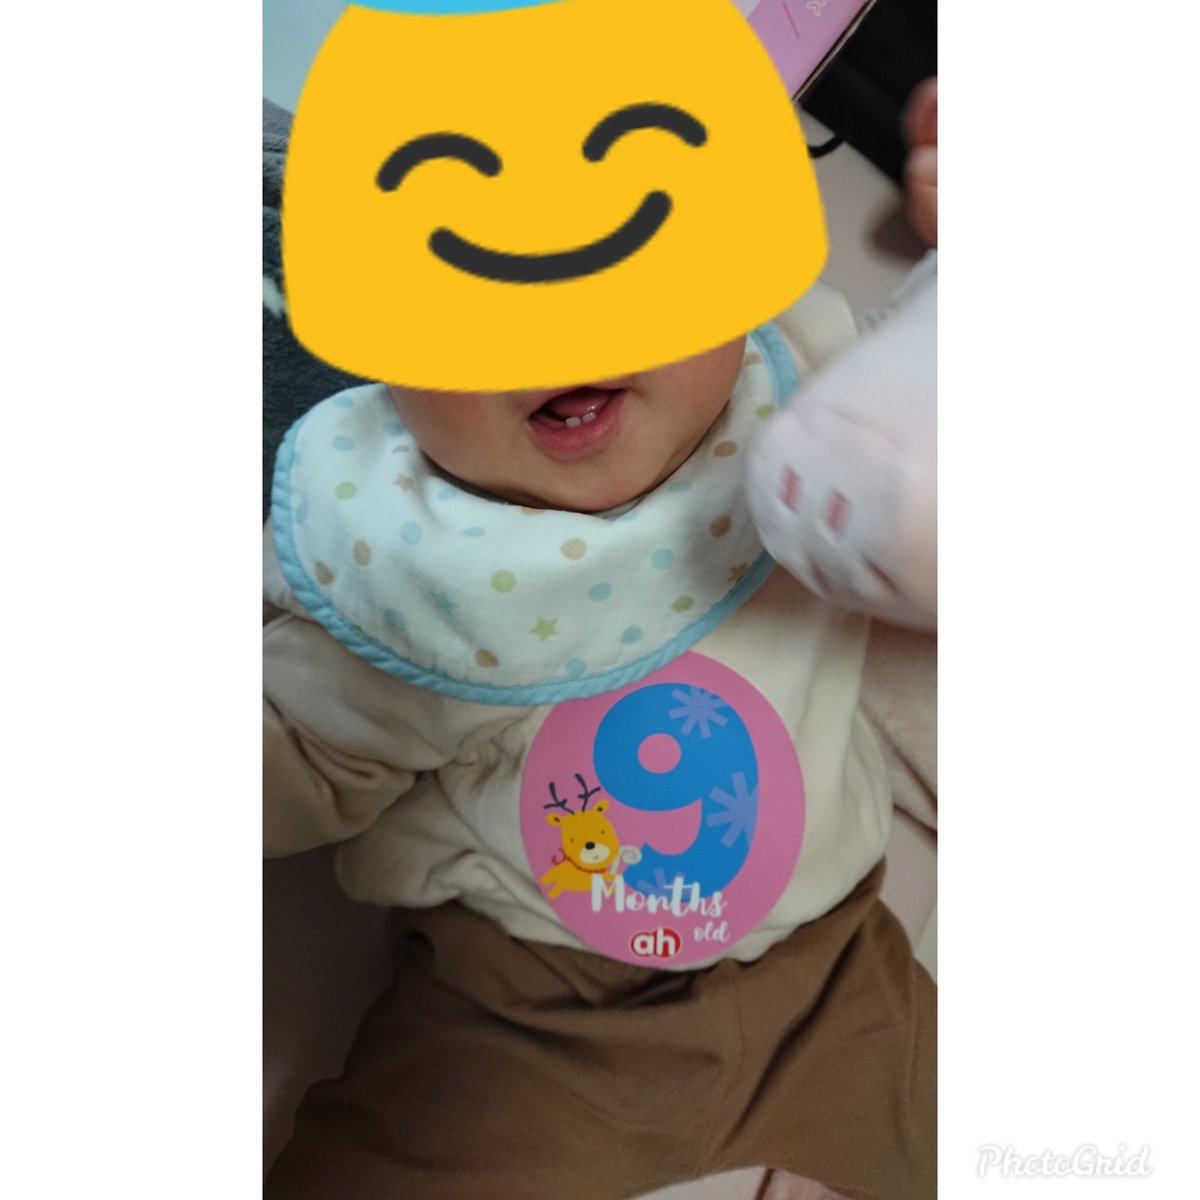 赤ちゃんすくすくシール - Twitter Search / Twitter